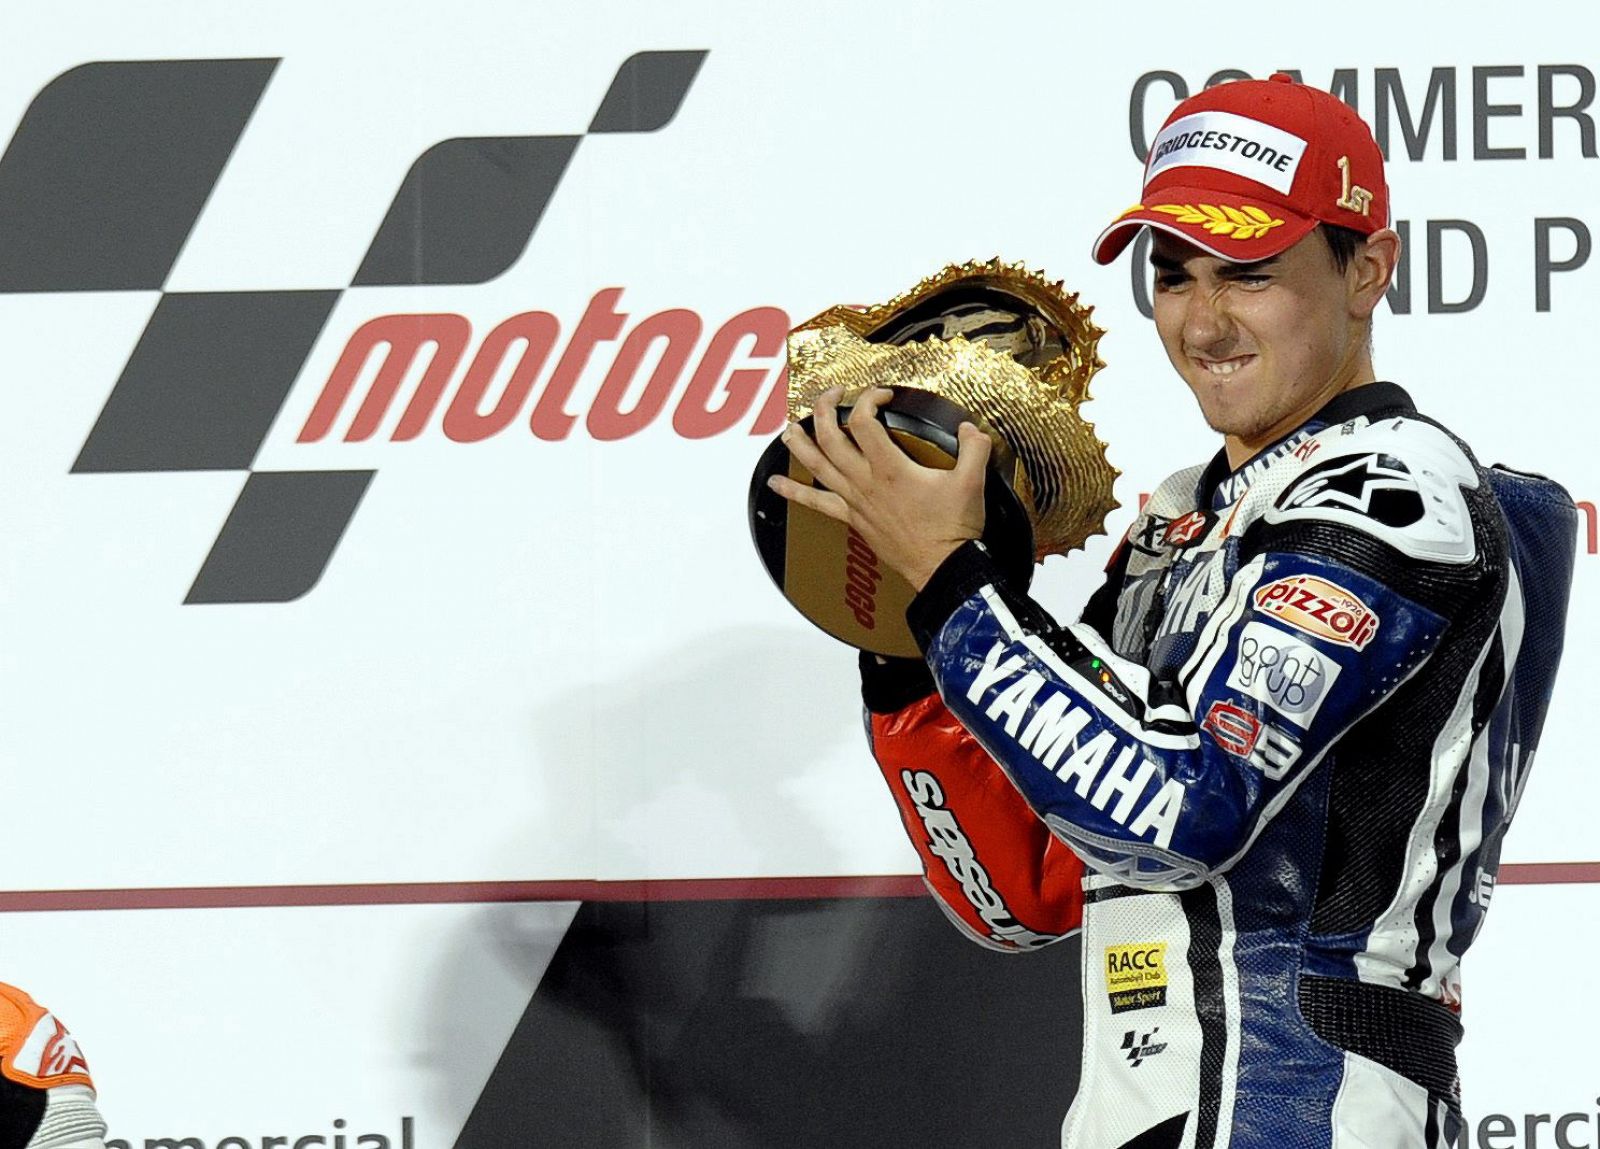 El piloto español Jorge Lorenzo del equipo Yamaha celebra en el podio su victoria.